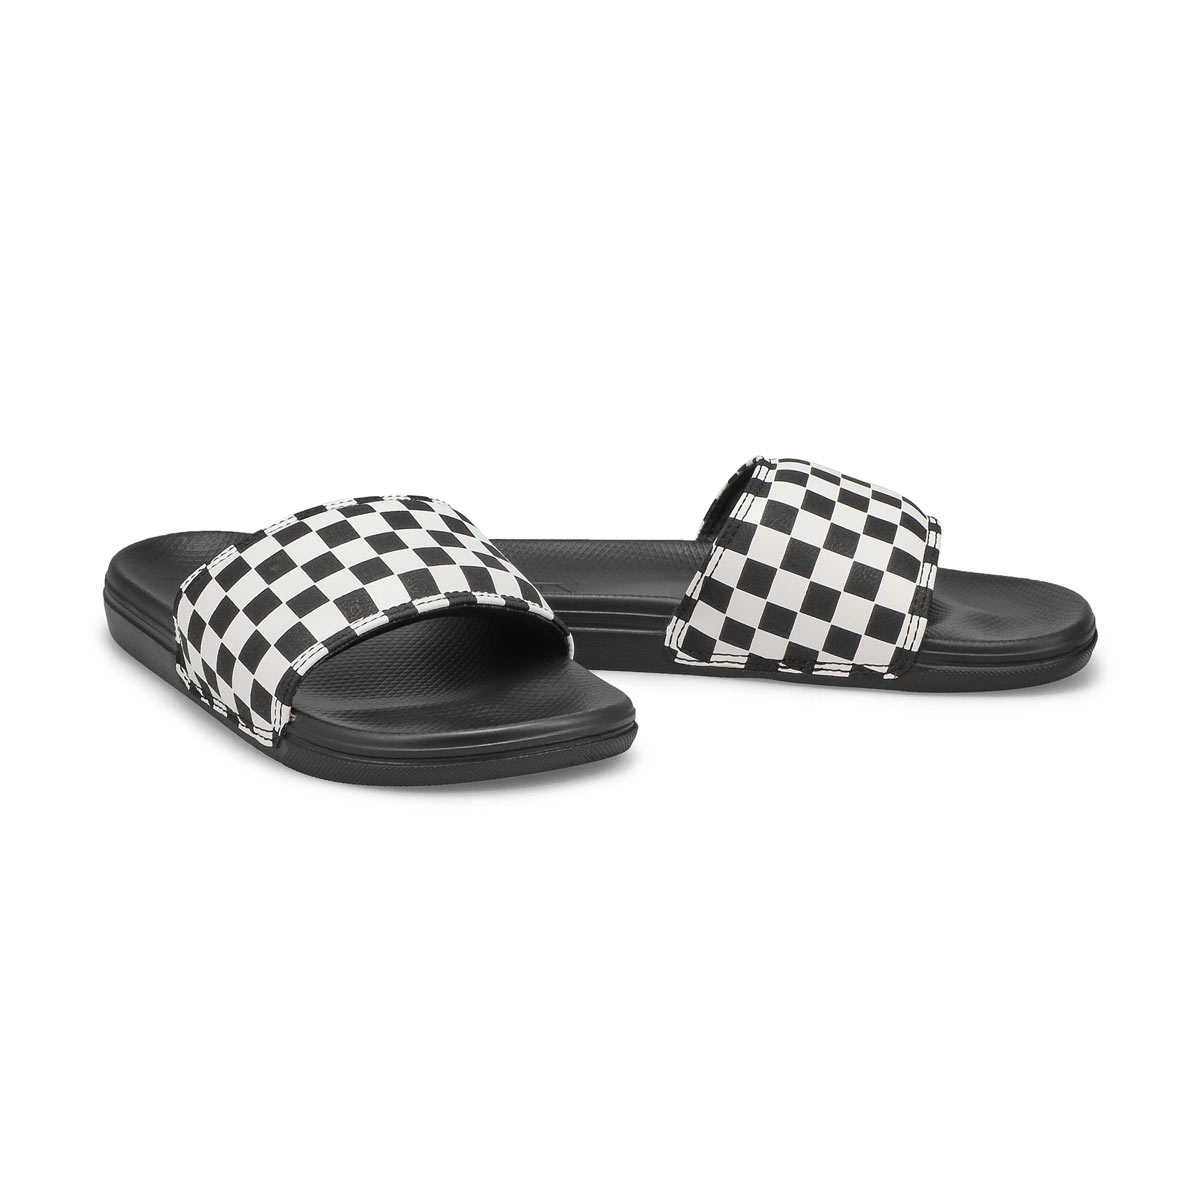 Boys' Range Slide-On-Checker Sandal